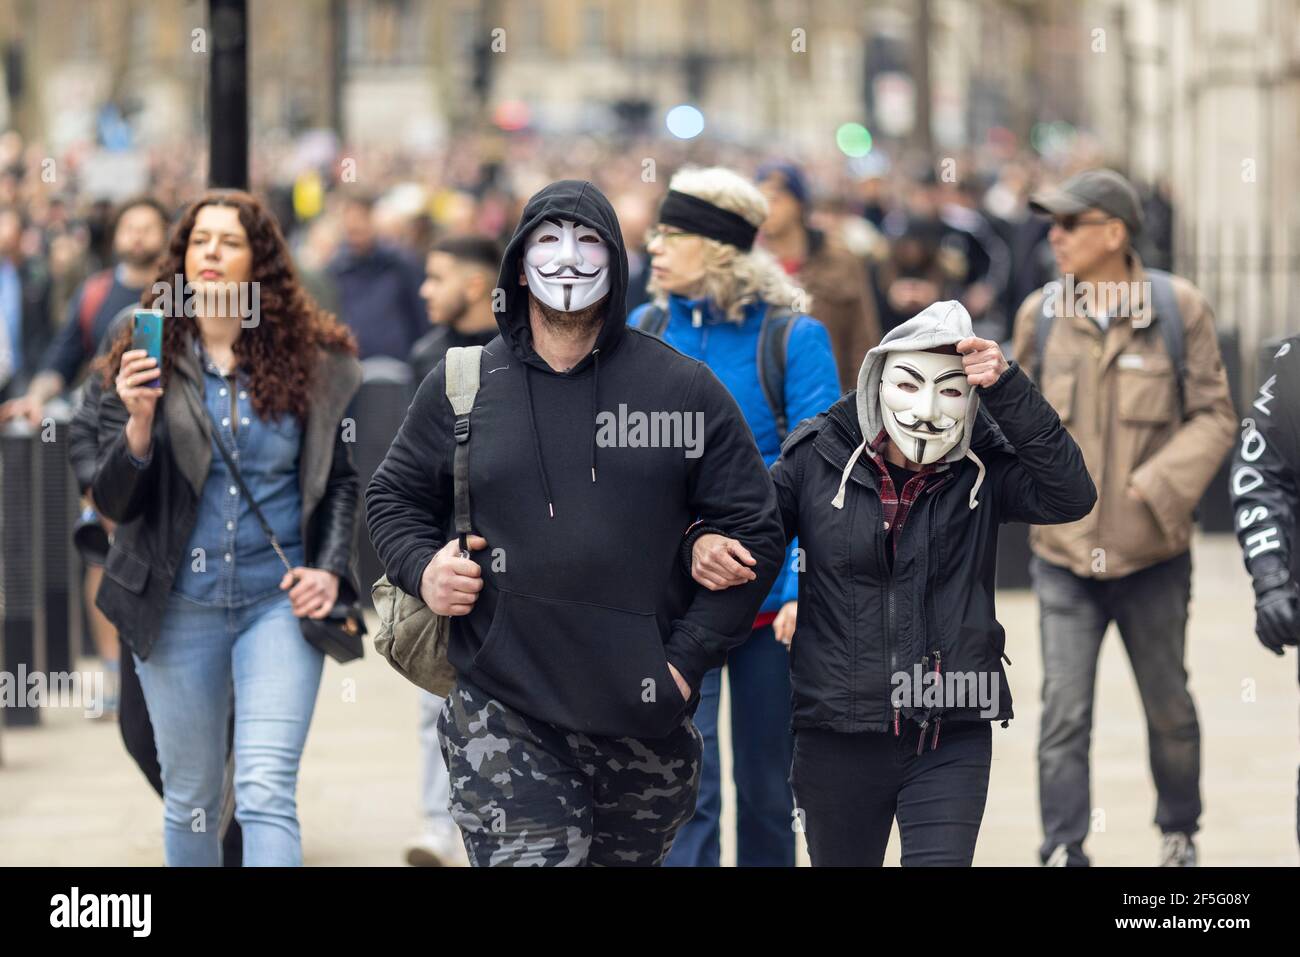 Manifestation contre le confinement et la vaccination contre Covid-19, Londres, 20 mars 2021. Marche des manifestants dans les masques Guy Fawkes. Banque D'Images